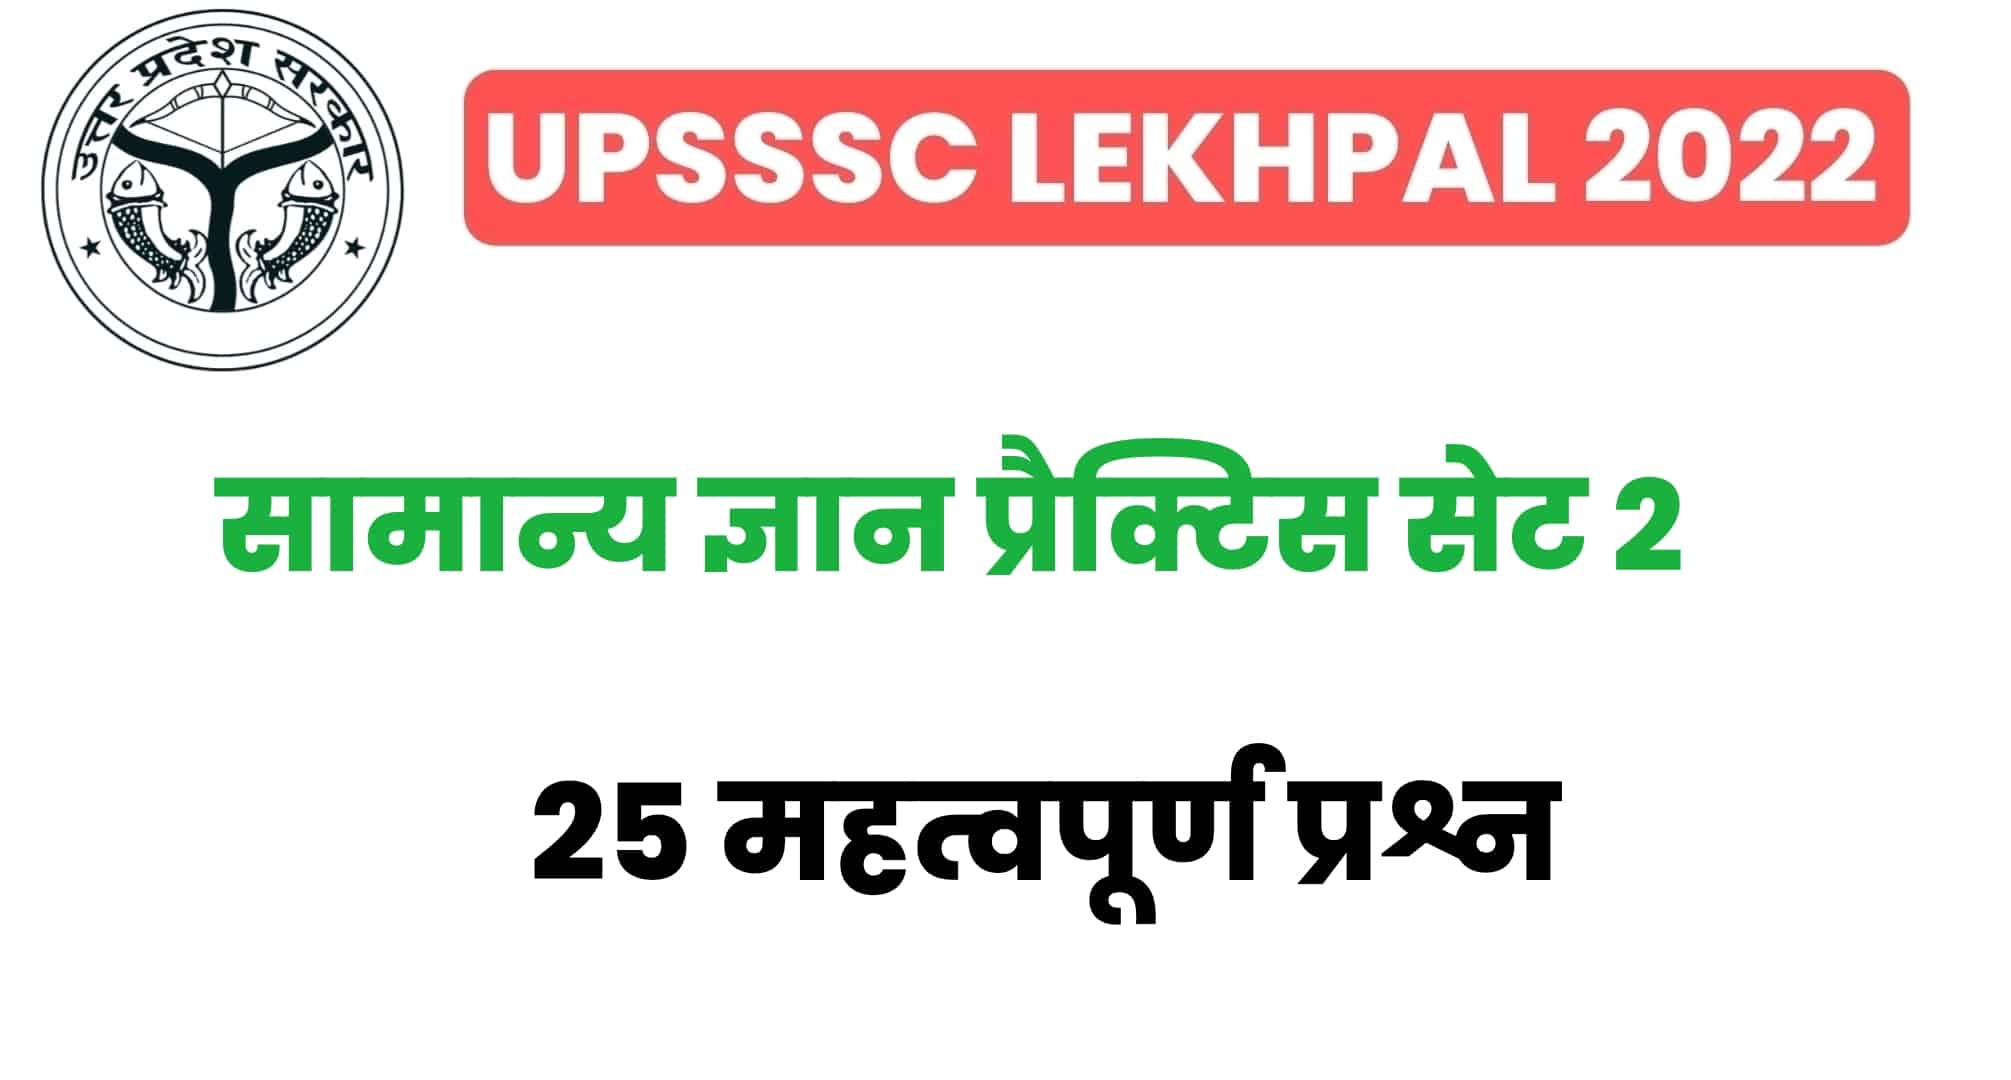 UP Lekhpal सामान्य ज्ञान प्रैक्टिस सेट 2 : परीक्षा से पहले GK के इन 25 महत्वपूर्ण प्रश्नों का कर लें अध्ययन